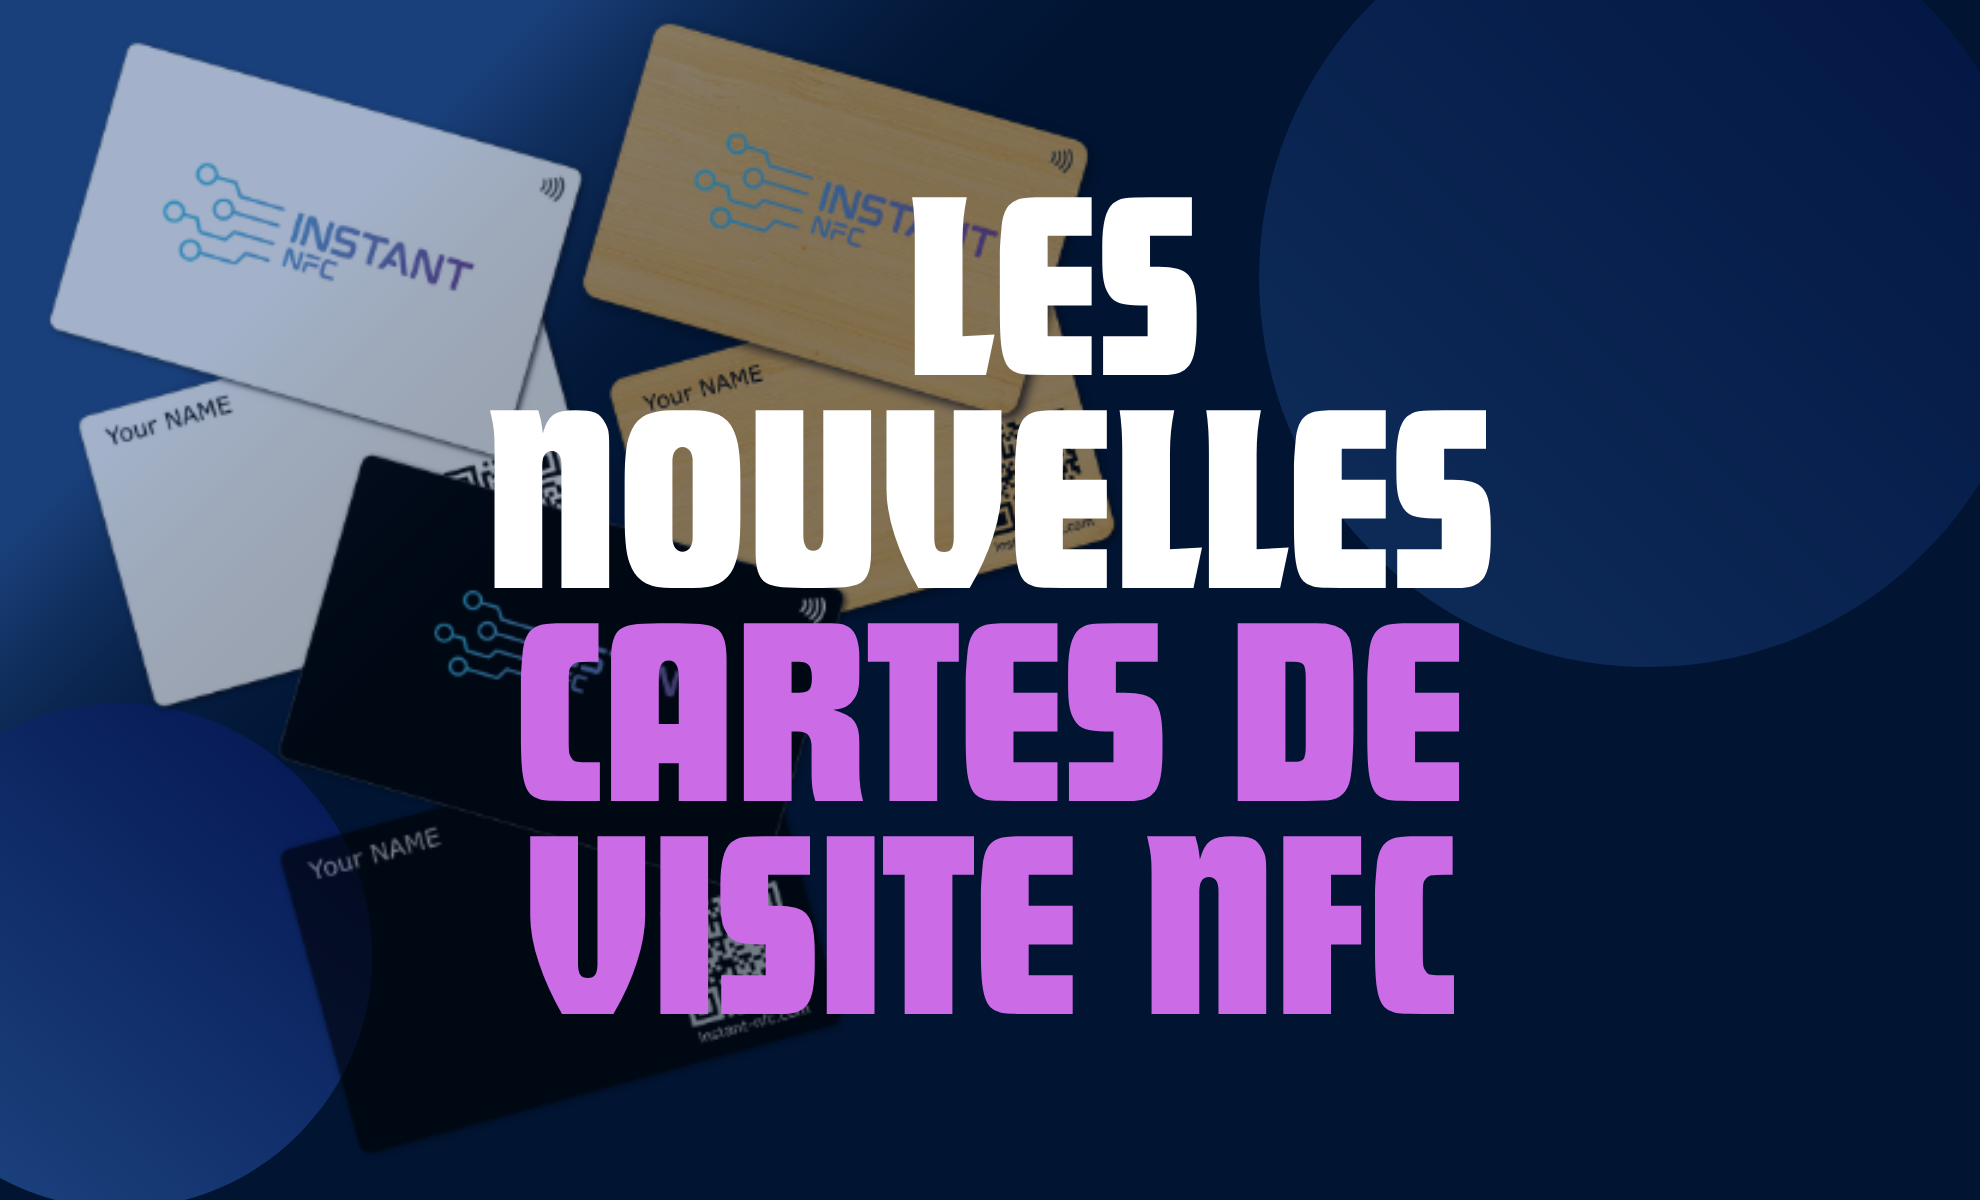 Les nouvelles Cartes de Visite NFC